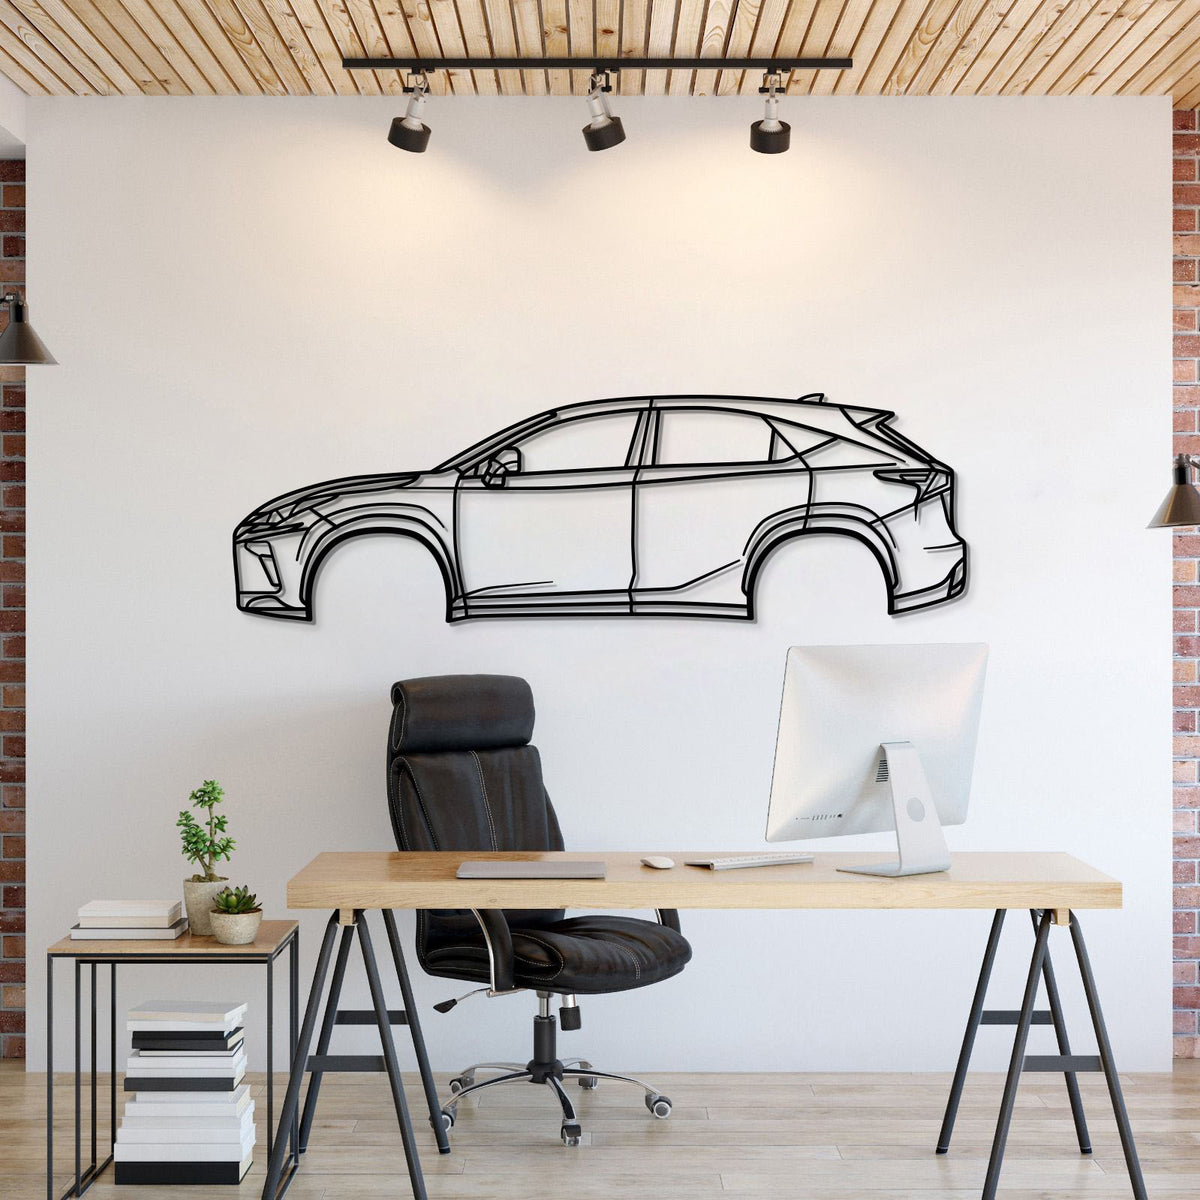 2015 NX 1st Gen Metal Car Wall Art - MT0537